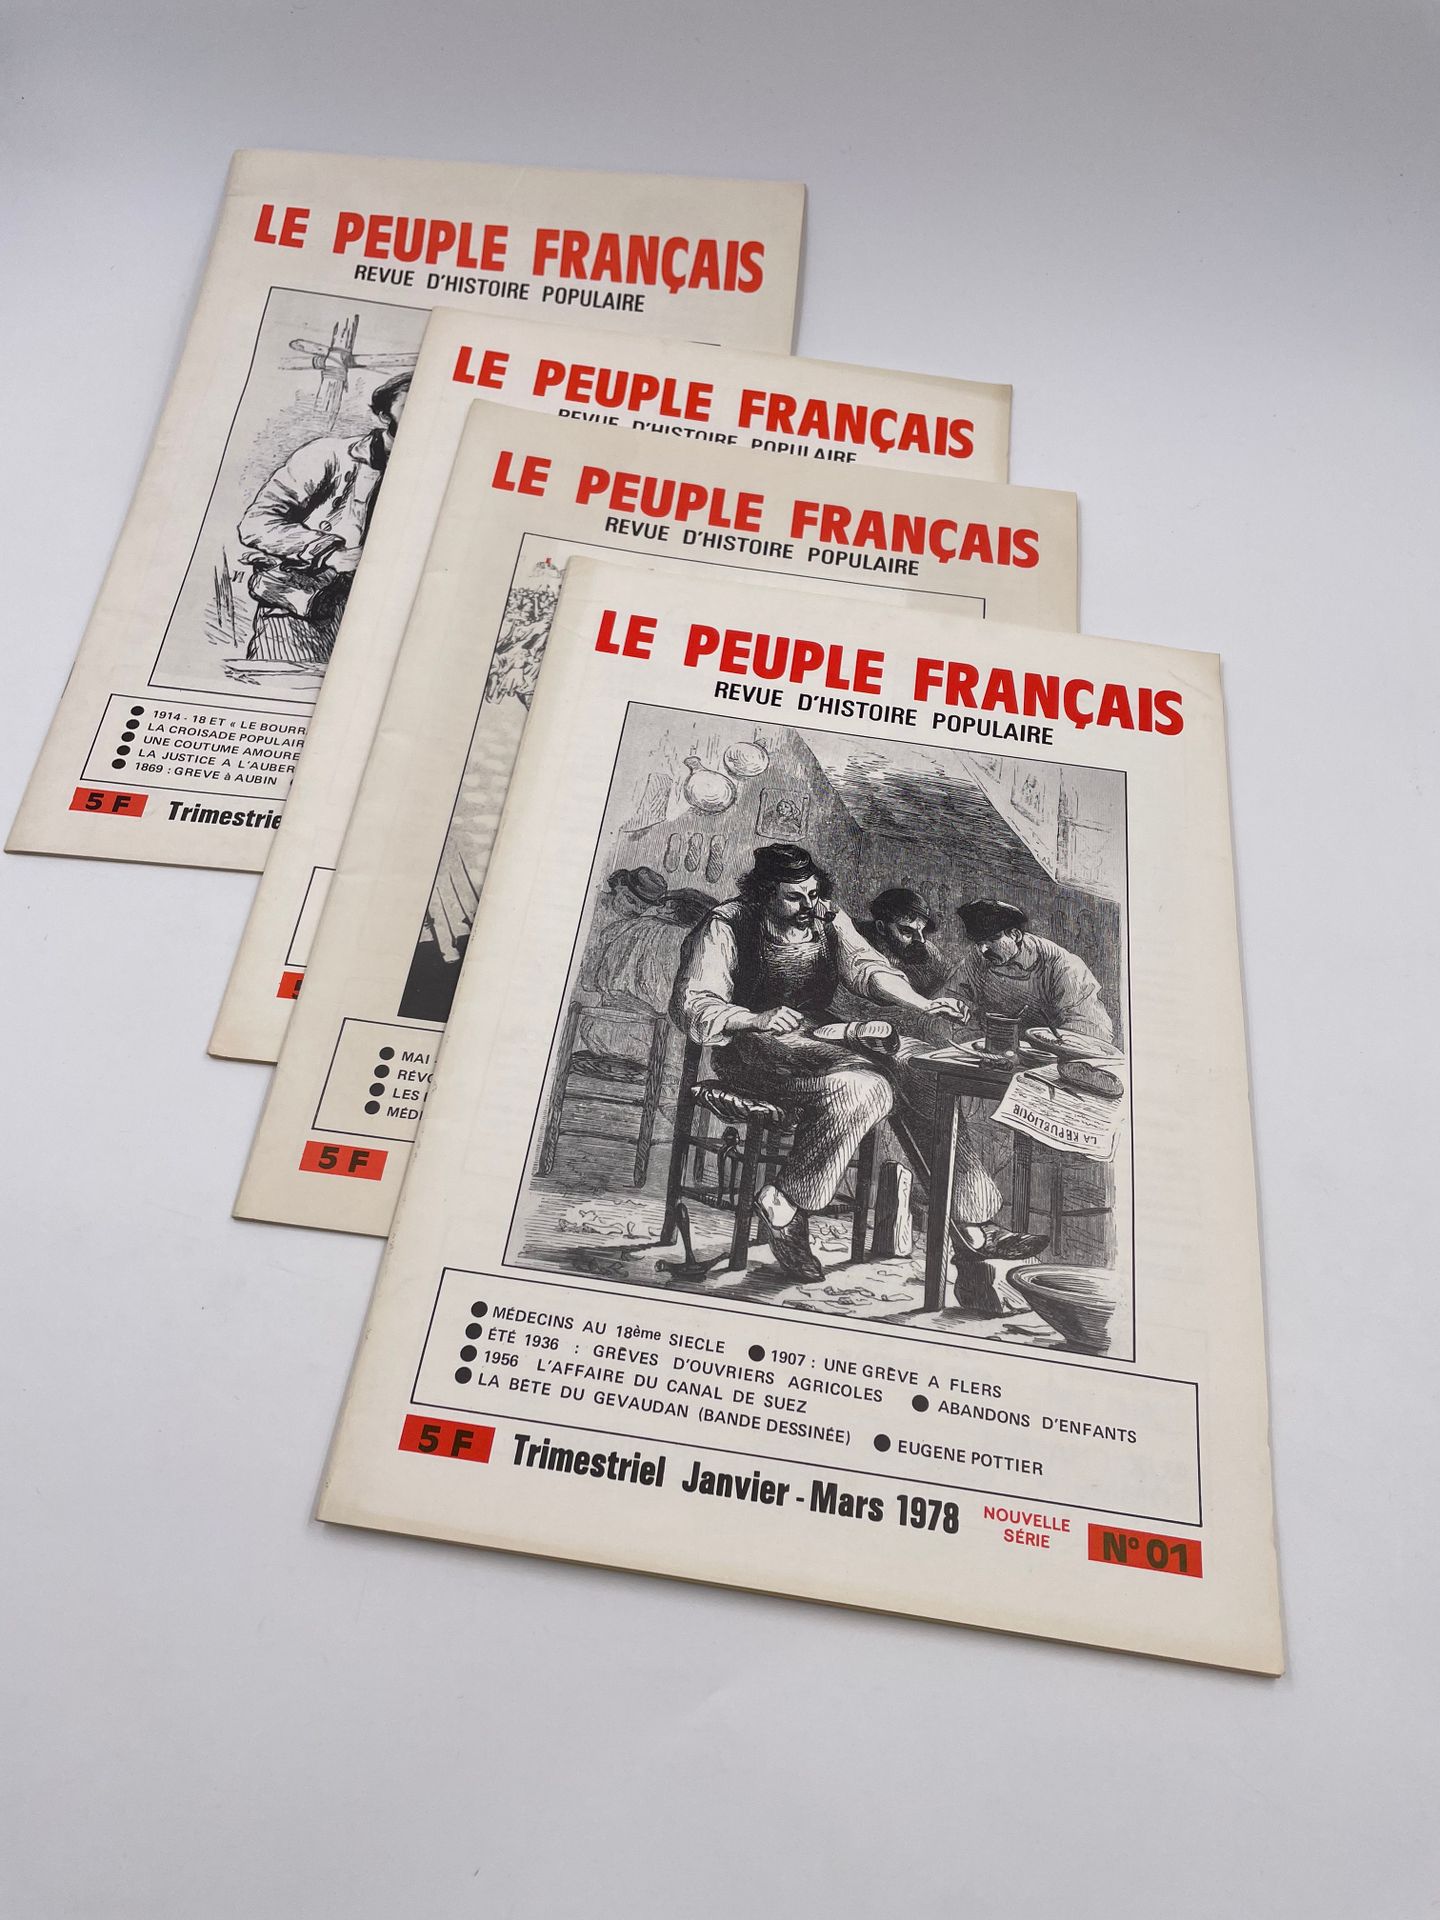 Null 4 Volumes :

- "LE PEUPLE FRANÇAIS N°1", Nouvelle série, Trimestriel Janvie&hellip;